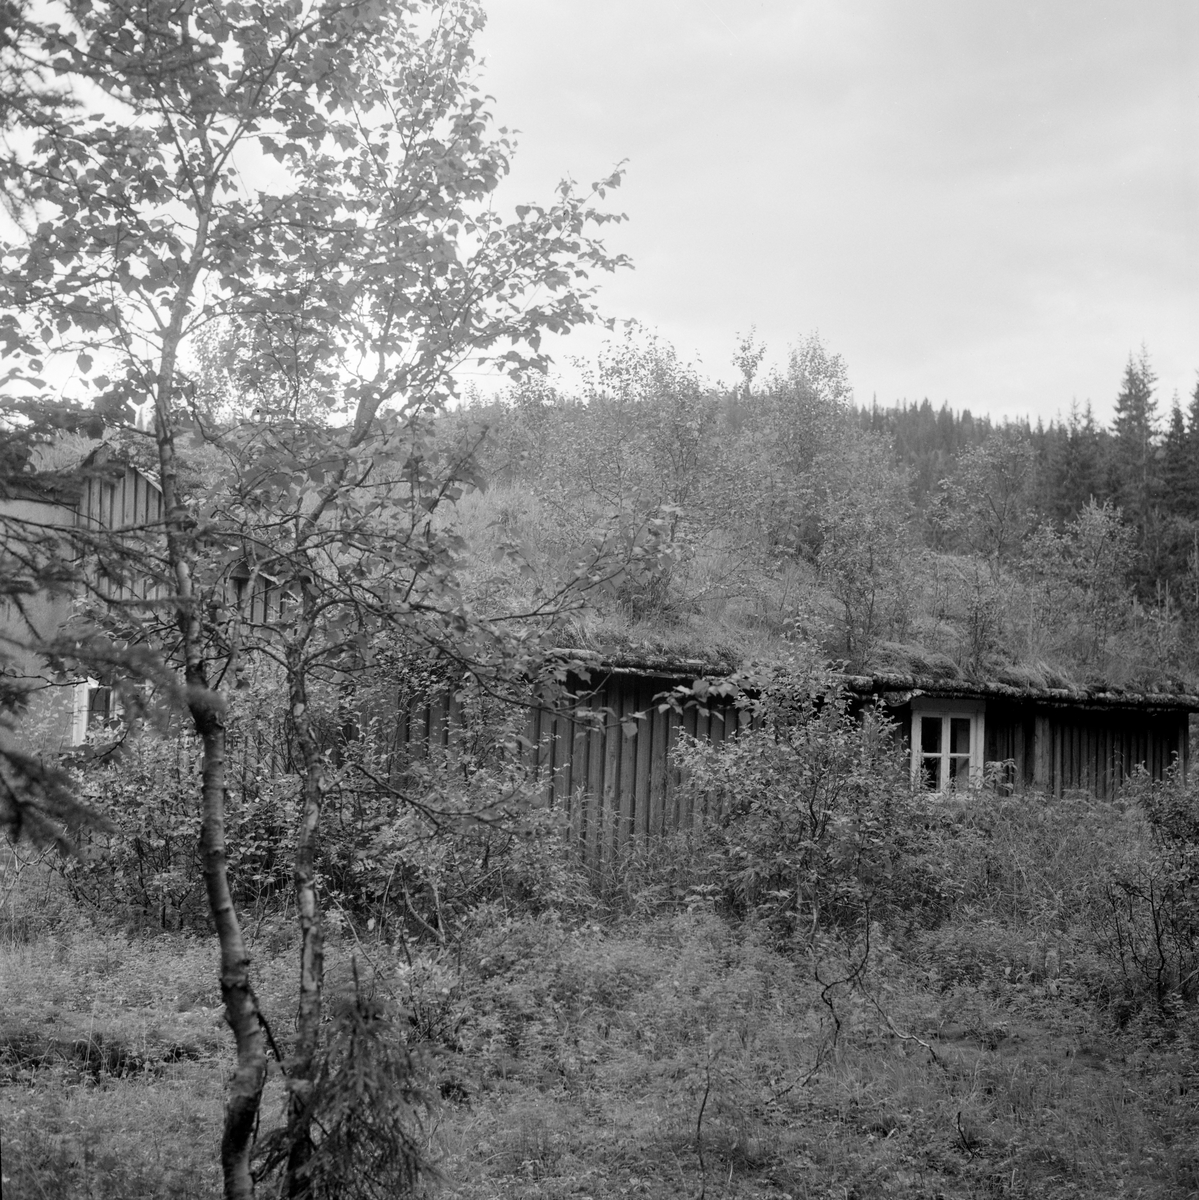 Ytterengkoia i daværende Kolveried kommune i Ytter-Namdalen, fotografert i 1964. Dette er en skogstuetype som skal ha vært vanlig i Trøndelag. Den har mannskapsrom i den ene enden og stall i den andre med et mellomliggende «peskhus», som var åpent på den sida av bygningskomplekset som her vender mot fotografen, men var stengt med en enkel bordvegg på den andre sida. Peskhuset ble brukt som lager for høy til skogshestene og som oppbevaringssted for ved som ble brukt i komfyren som var varmekilde i mannskapsrommet. Både stallen og mannskapsrommet var laftekonstruksjoner, noe som ikke så lett lar seg lese ut fra dette fotografiet, for da det ble tatt var disse bygningsdelene utvendig bordkledd. Den opprinnelige løsningen med mannskapsrom, peskhus og stall på rekke var supplert med tilbygg i begge gavlendene. Inntil stallen var det reist et bindingsverksskur med bølgeblikktekket pulttak, og mannskapsrommet hadde også en forlengelse, et tørkerom, utført i bindingsverk med pappkledning og platetak som hadde røykavløp via et blikkrør. På det ellers torvtekte saltaket vokste det bjørkekratt som tydet på at det var lenge siden denne skogstua hadde vært brukt og vedlikeholdt.  Dette fotografiet er tatt mot mannskapsrommet og den «bakre» langveggen. Vinduet vi ser til høyre i bildet kastet lys inn i peskhuset.

Norsk Skogbruksmuseum ønsket i 1960-åra å supplere den østlandsdominerte samlinga av skogshusvære i friluftssamlinga på Prestøya med koietyper fra andre norske skogdistrikter. I 1965 fikk de dette bygningskomplekset som gave fra daværende grunneier, Bangdalsbruket. Karsten Solum (1923-1970) og Bjarne Myhre (1922-1977) bisto med demontering, og sistnevnte hadde også hovedansvar for gjenoppføringa på museet.  Her gjenoppsto Ytterengstua eller Bangdalskoia uten den sekundære ytterkledningen, uten tilbyggene i gavlendene og uten den inntrukne piskhusveggen, som antakelig også var sekundær. Jfr. Norsk skogmuseums bygningssamling - SJF-B.0029 - der det finnes mer informasjon.